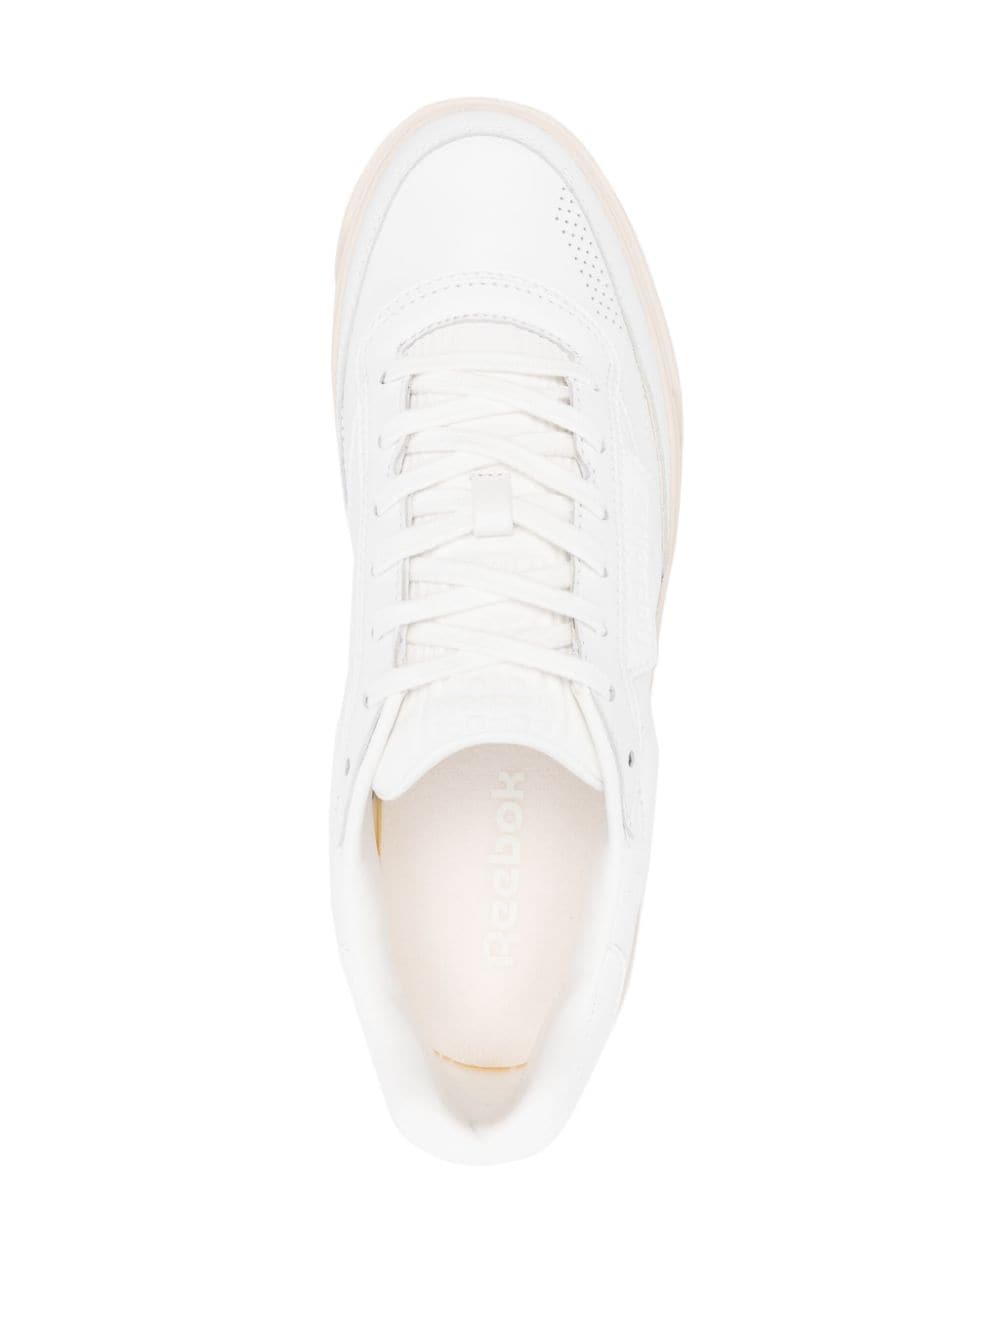 Reebok Club C LTD sneakers White